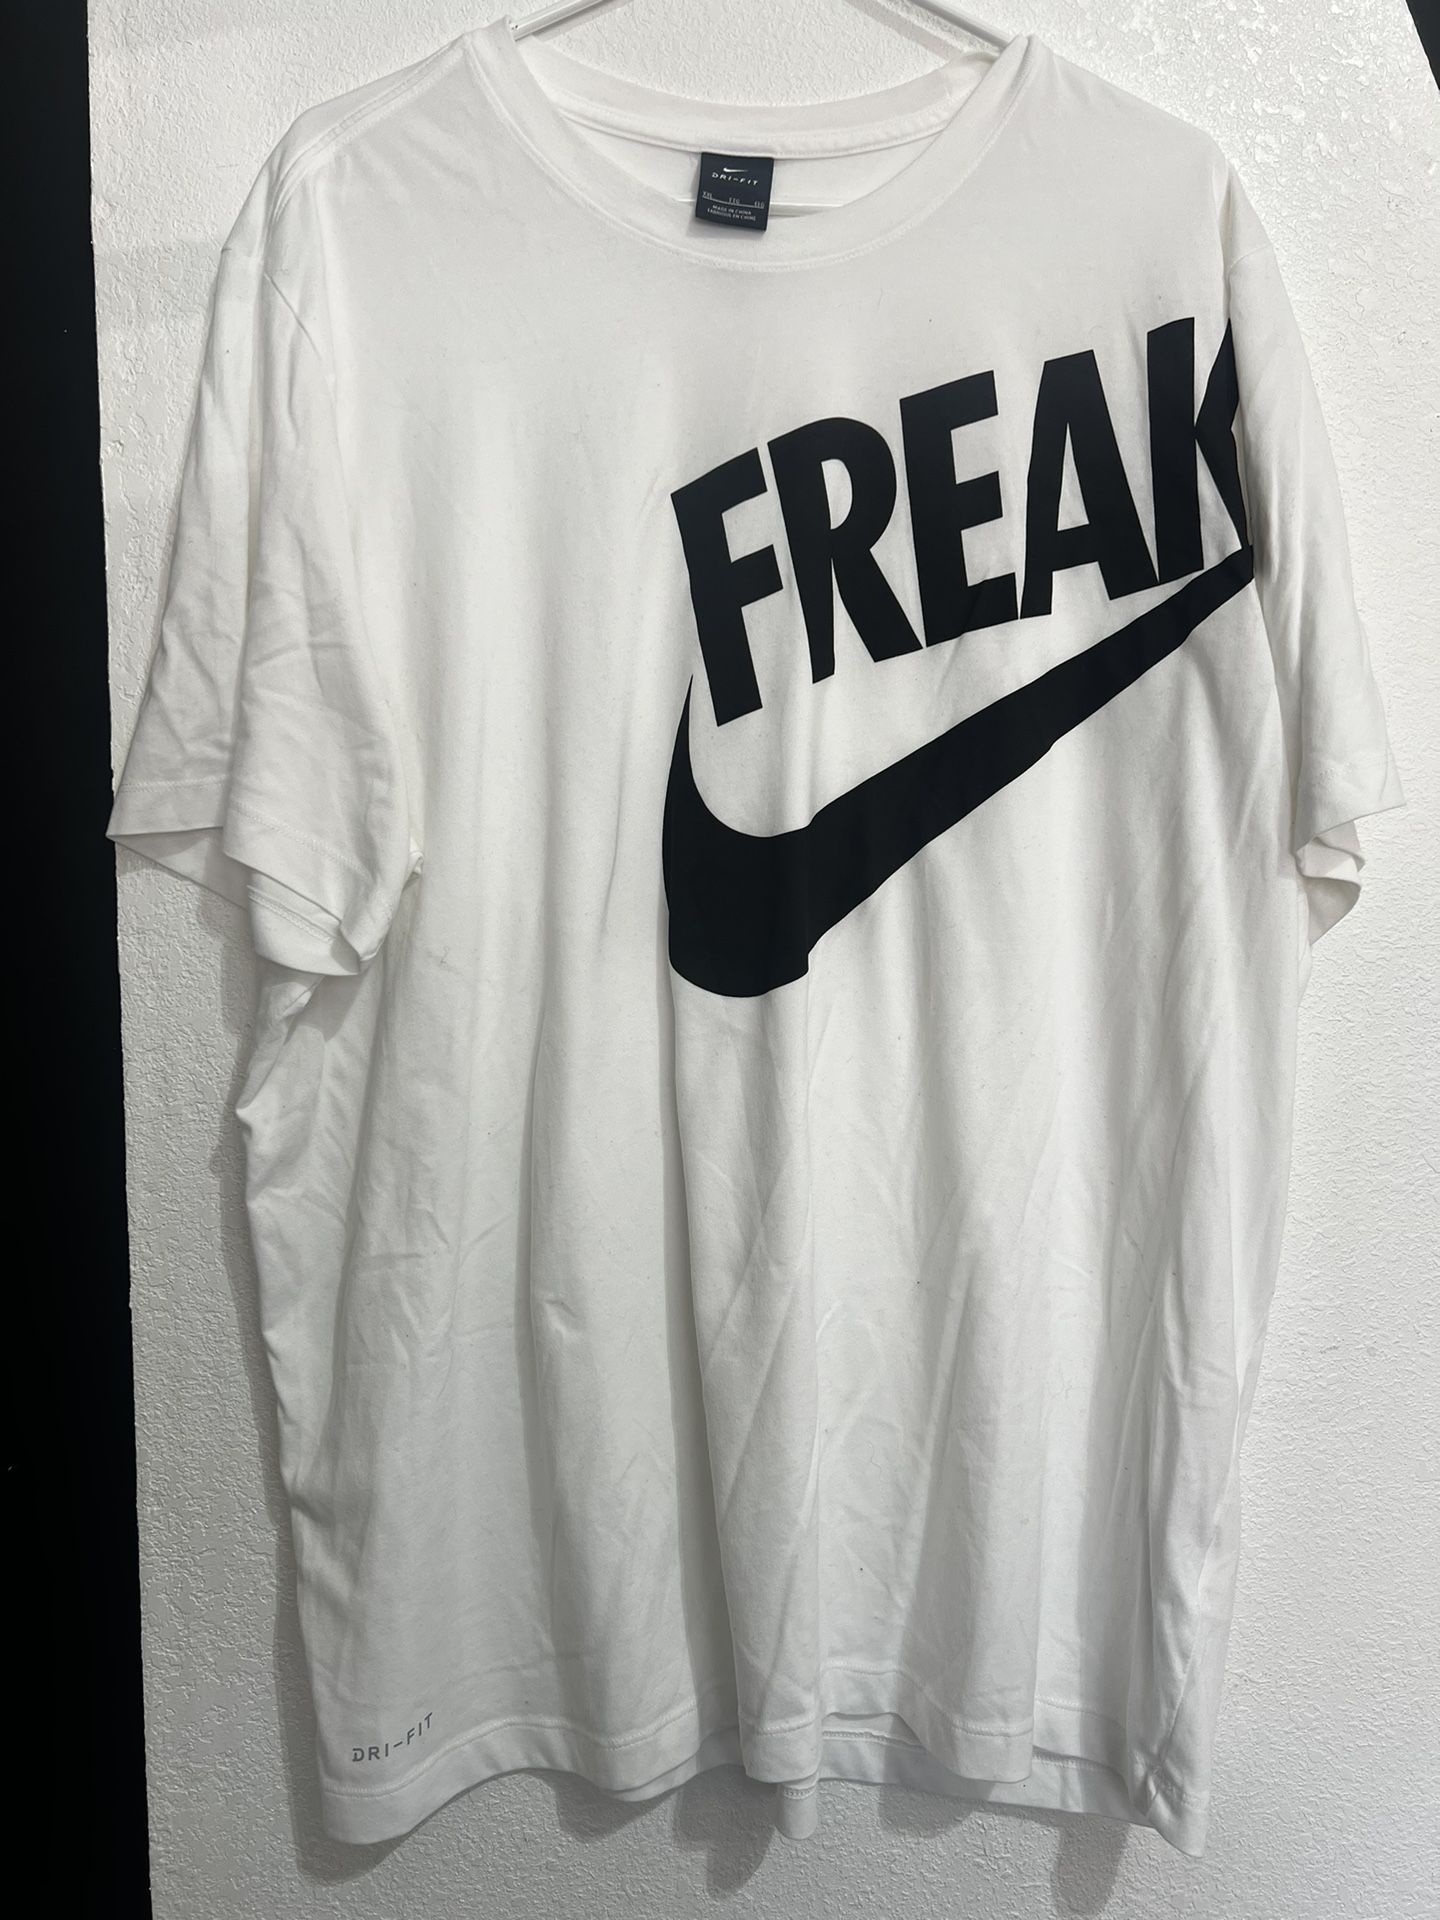 Nike FREAK - Giannis Antetokounmpo Dri Fit White Shirt 2xl Xxl Basketball Training Tee 